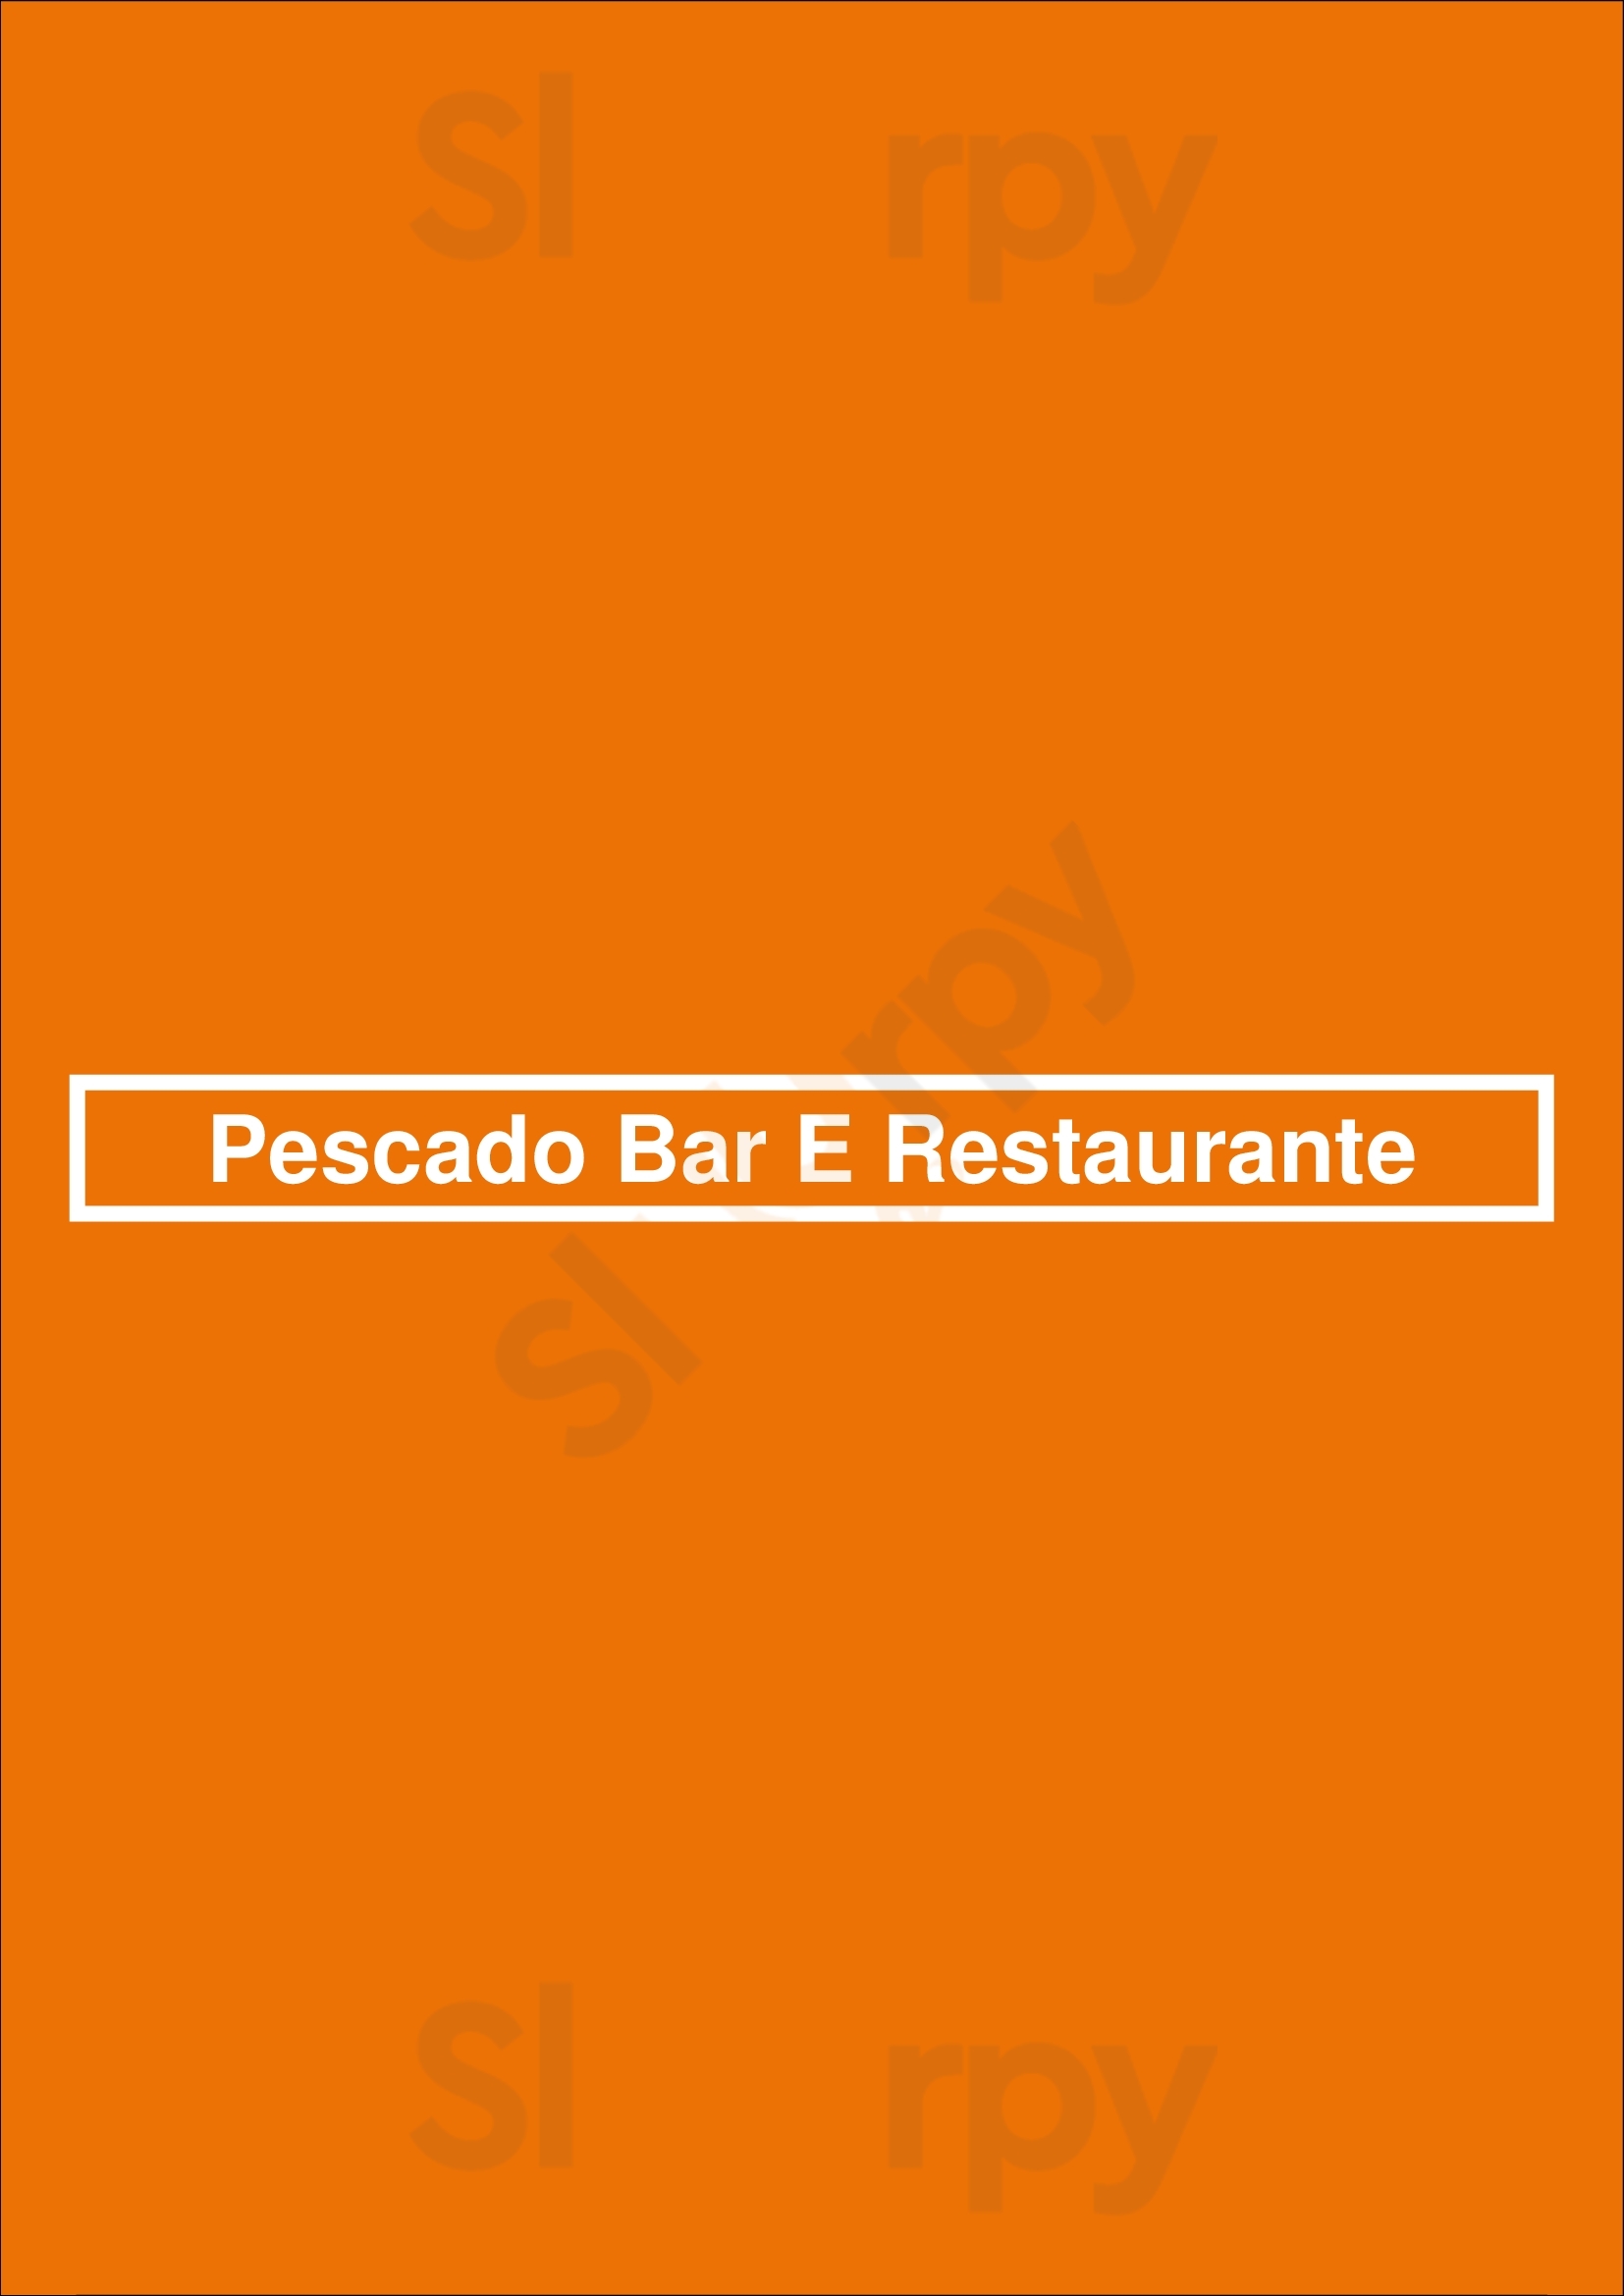 Pescado Bar E Restaurante São Paulo Menu - 1